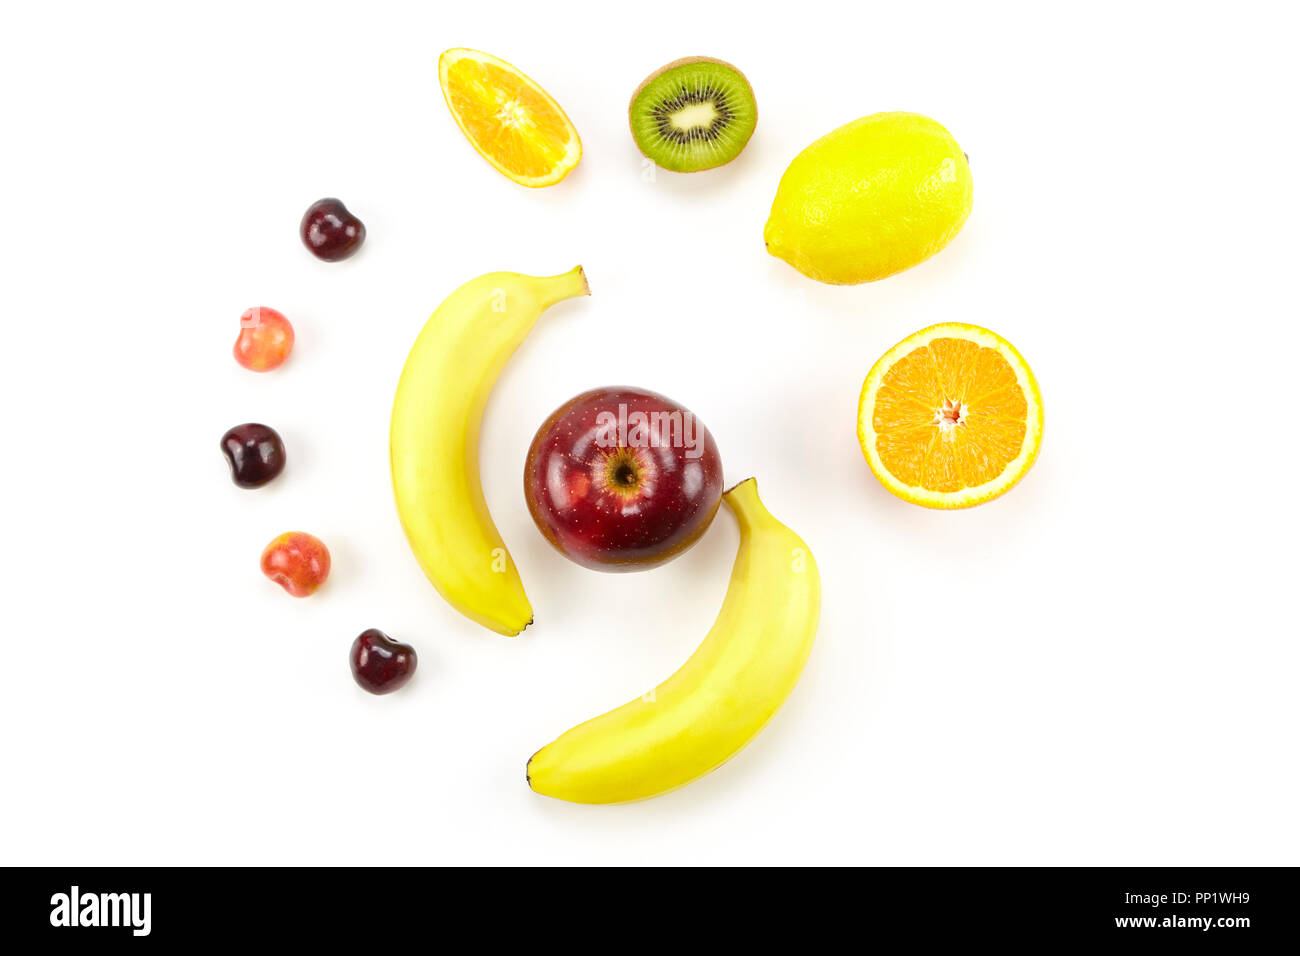 assorted fresh fruits isolated on white background. Stock Photo